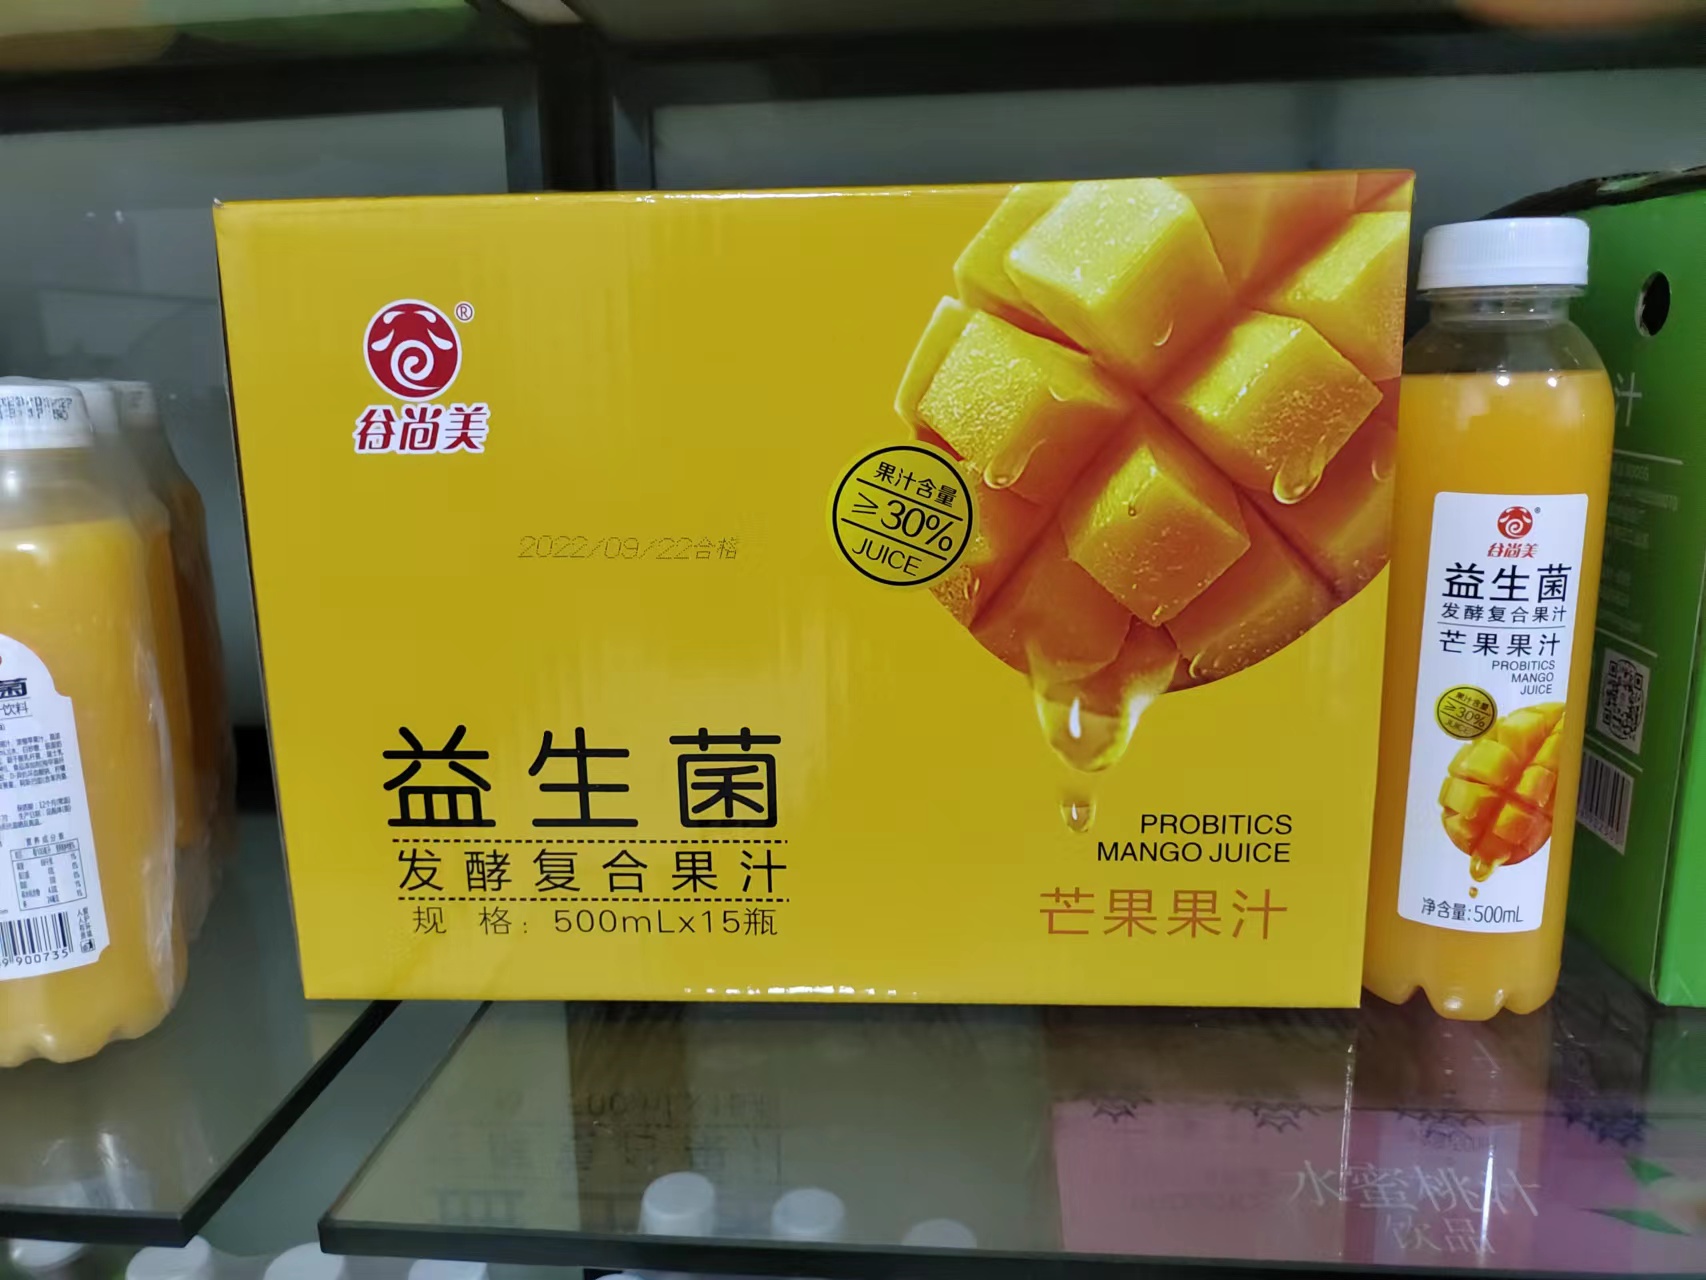 谷尚美益生菌发酵复合果汁芒果果汁500ml×15瓶